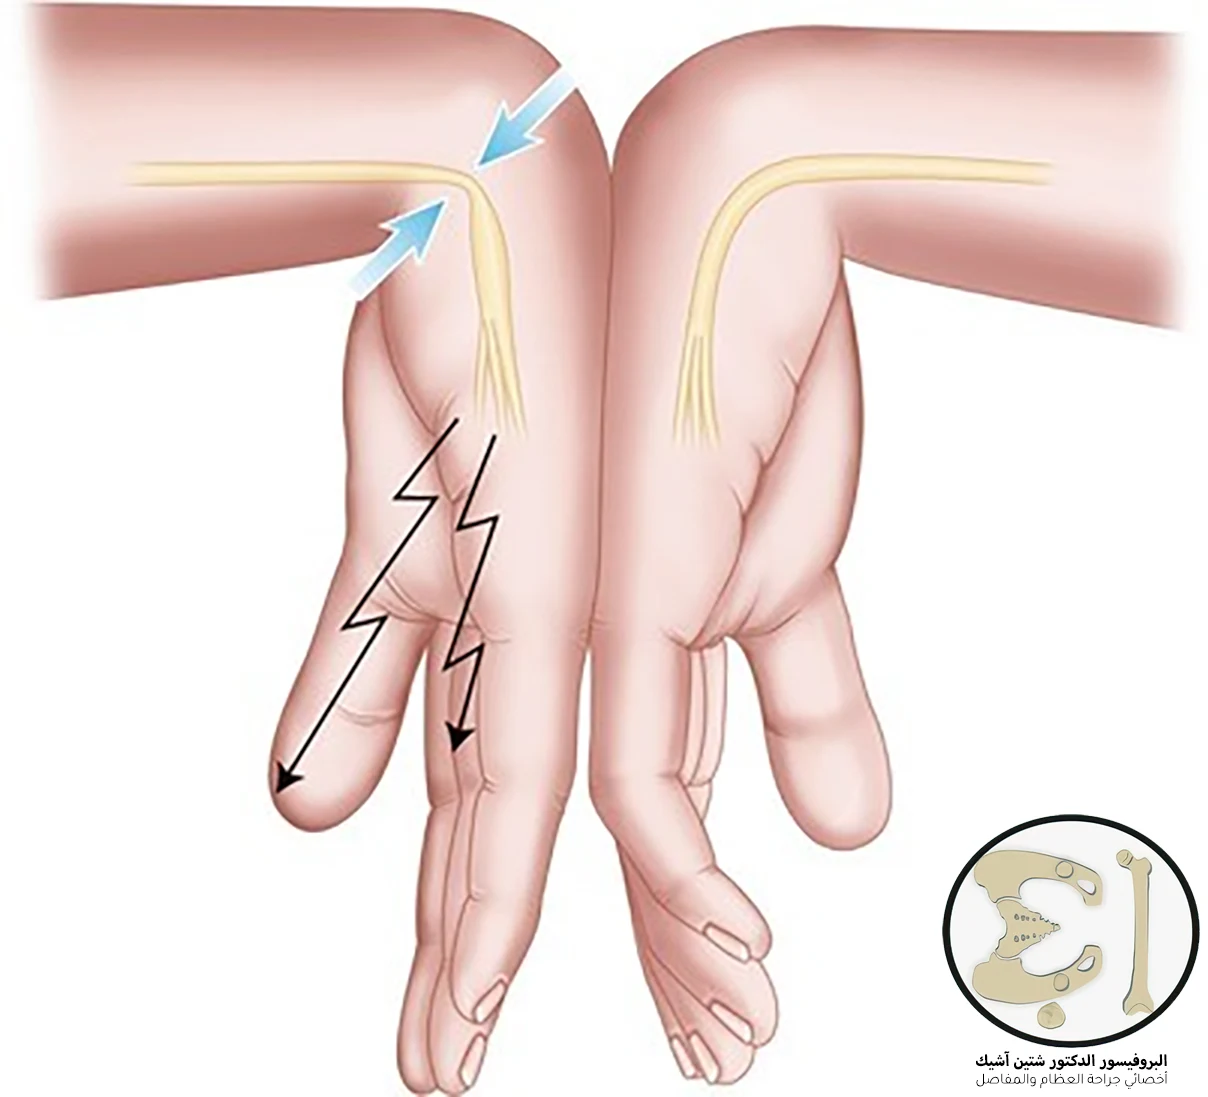 صورة توضح أن ثني اليد قد يحرض نوبة الألم لدى مرضى متلازمة النفق الرسغي